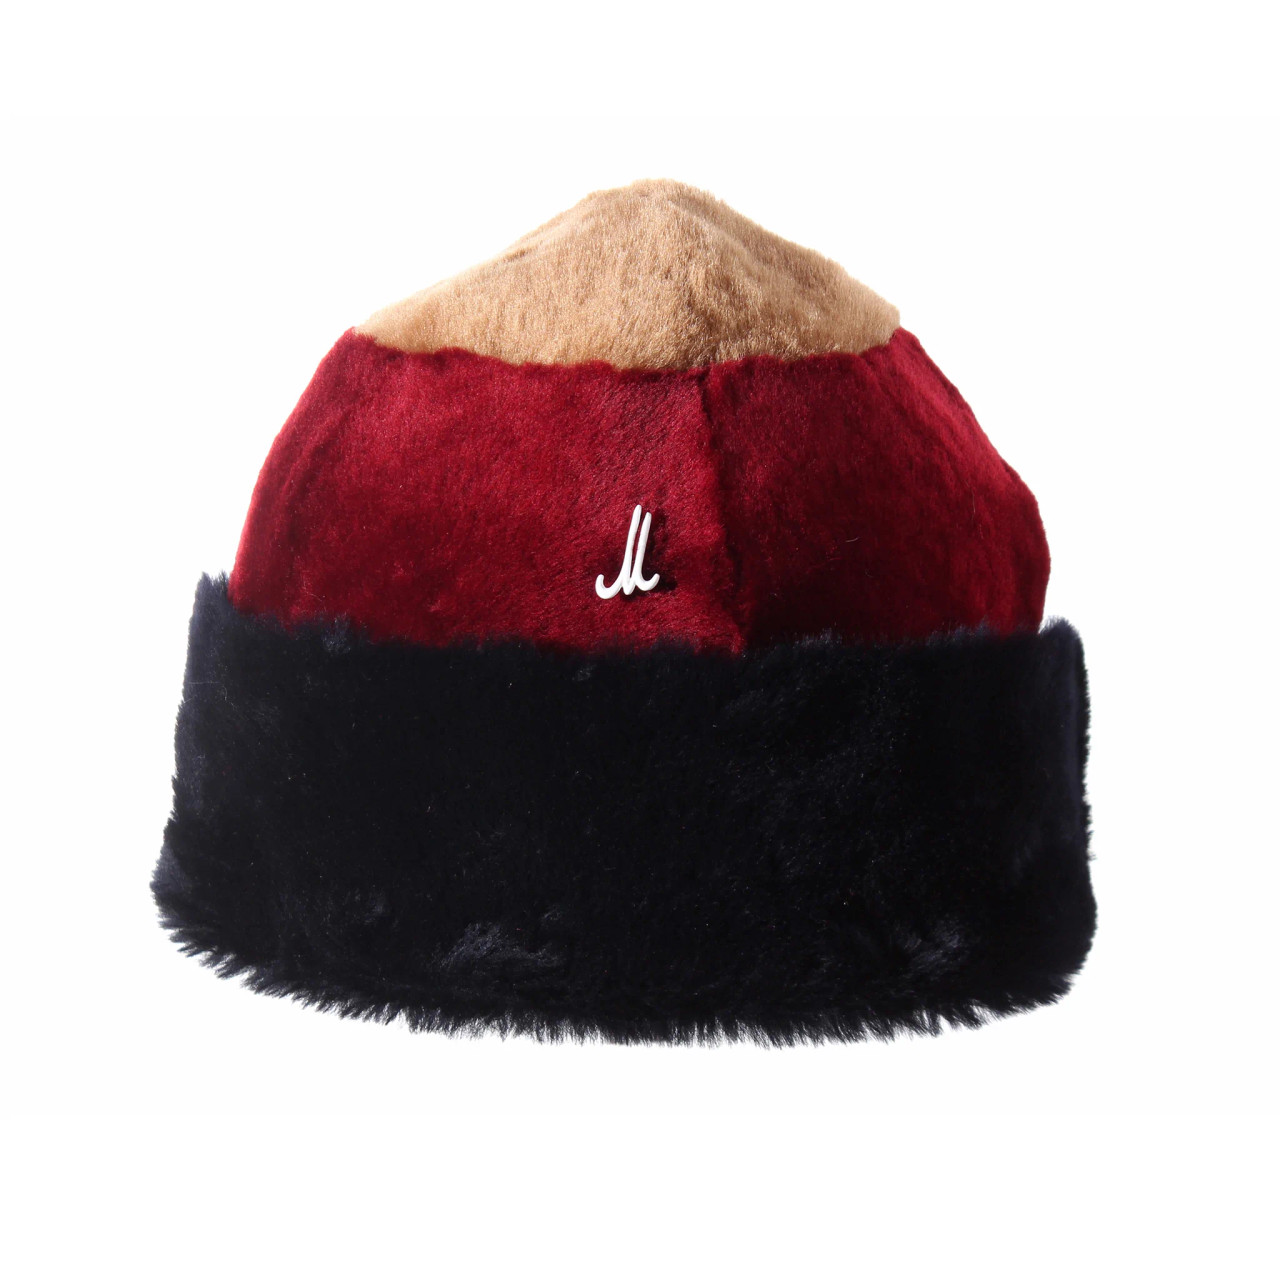 Muhlbauer: Beanie Hat in Camel, Dark Red and Dark Blue, tomfoolery london